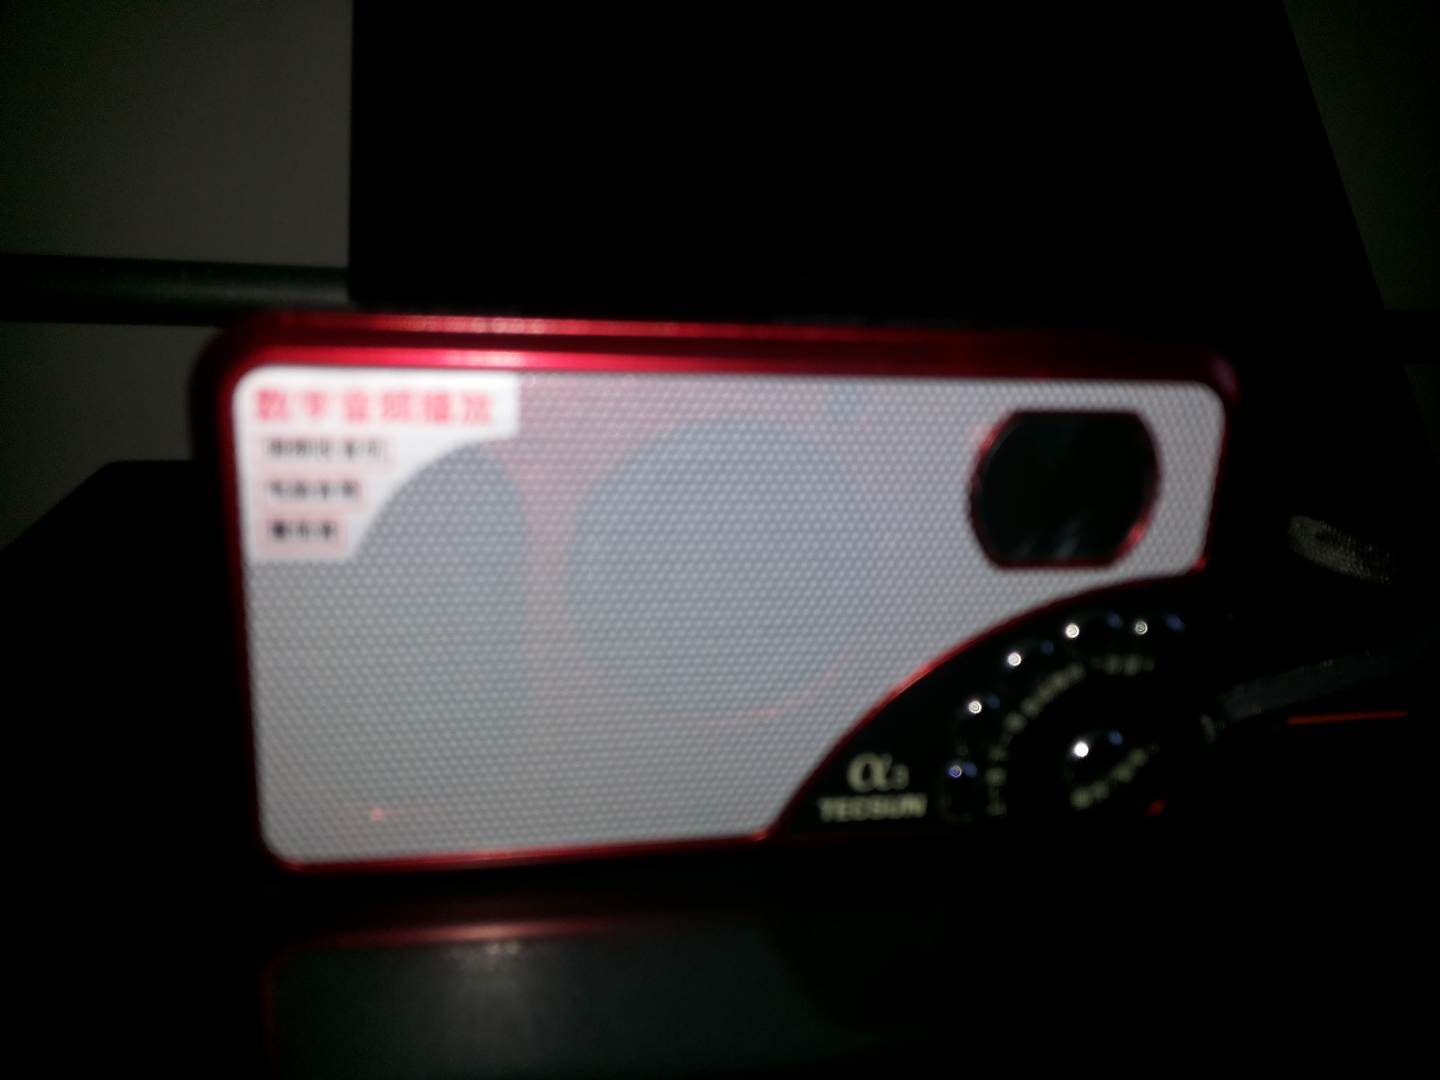 德生（Tecsun）A3迷你音响便携式插卡音箱收音机老人外放播放器 红色 实拍图